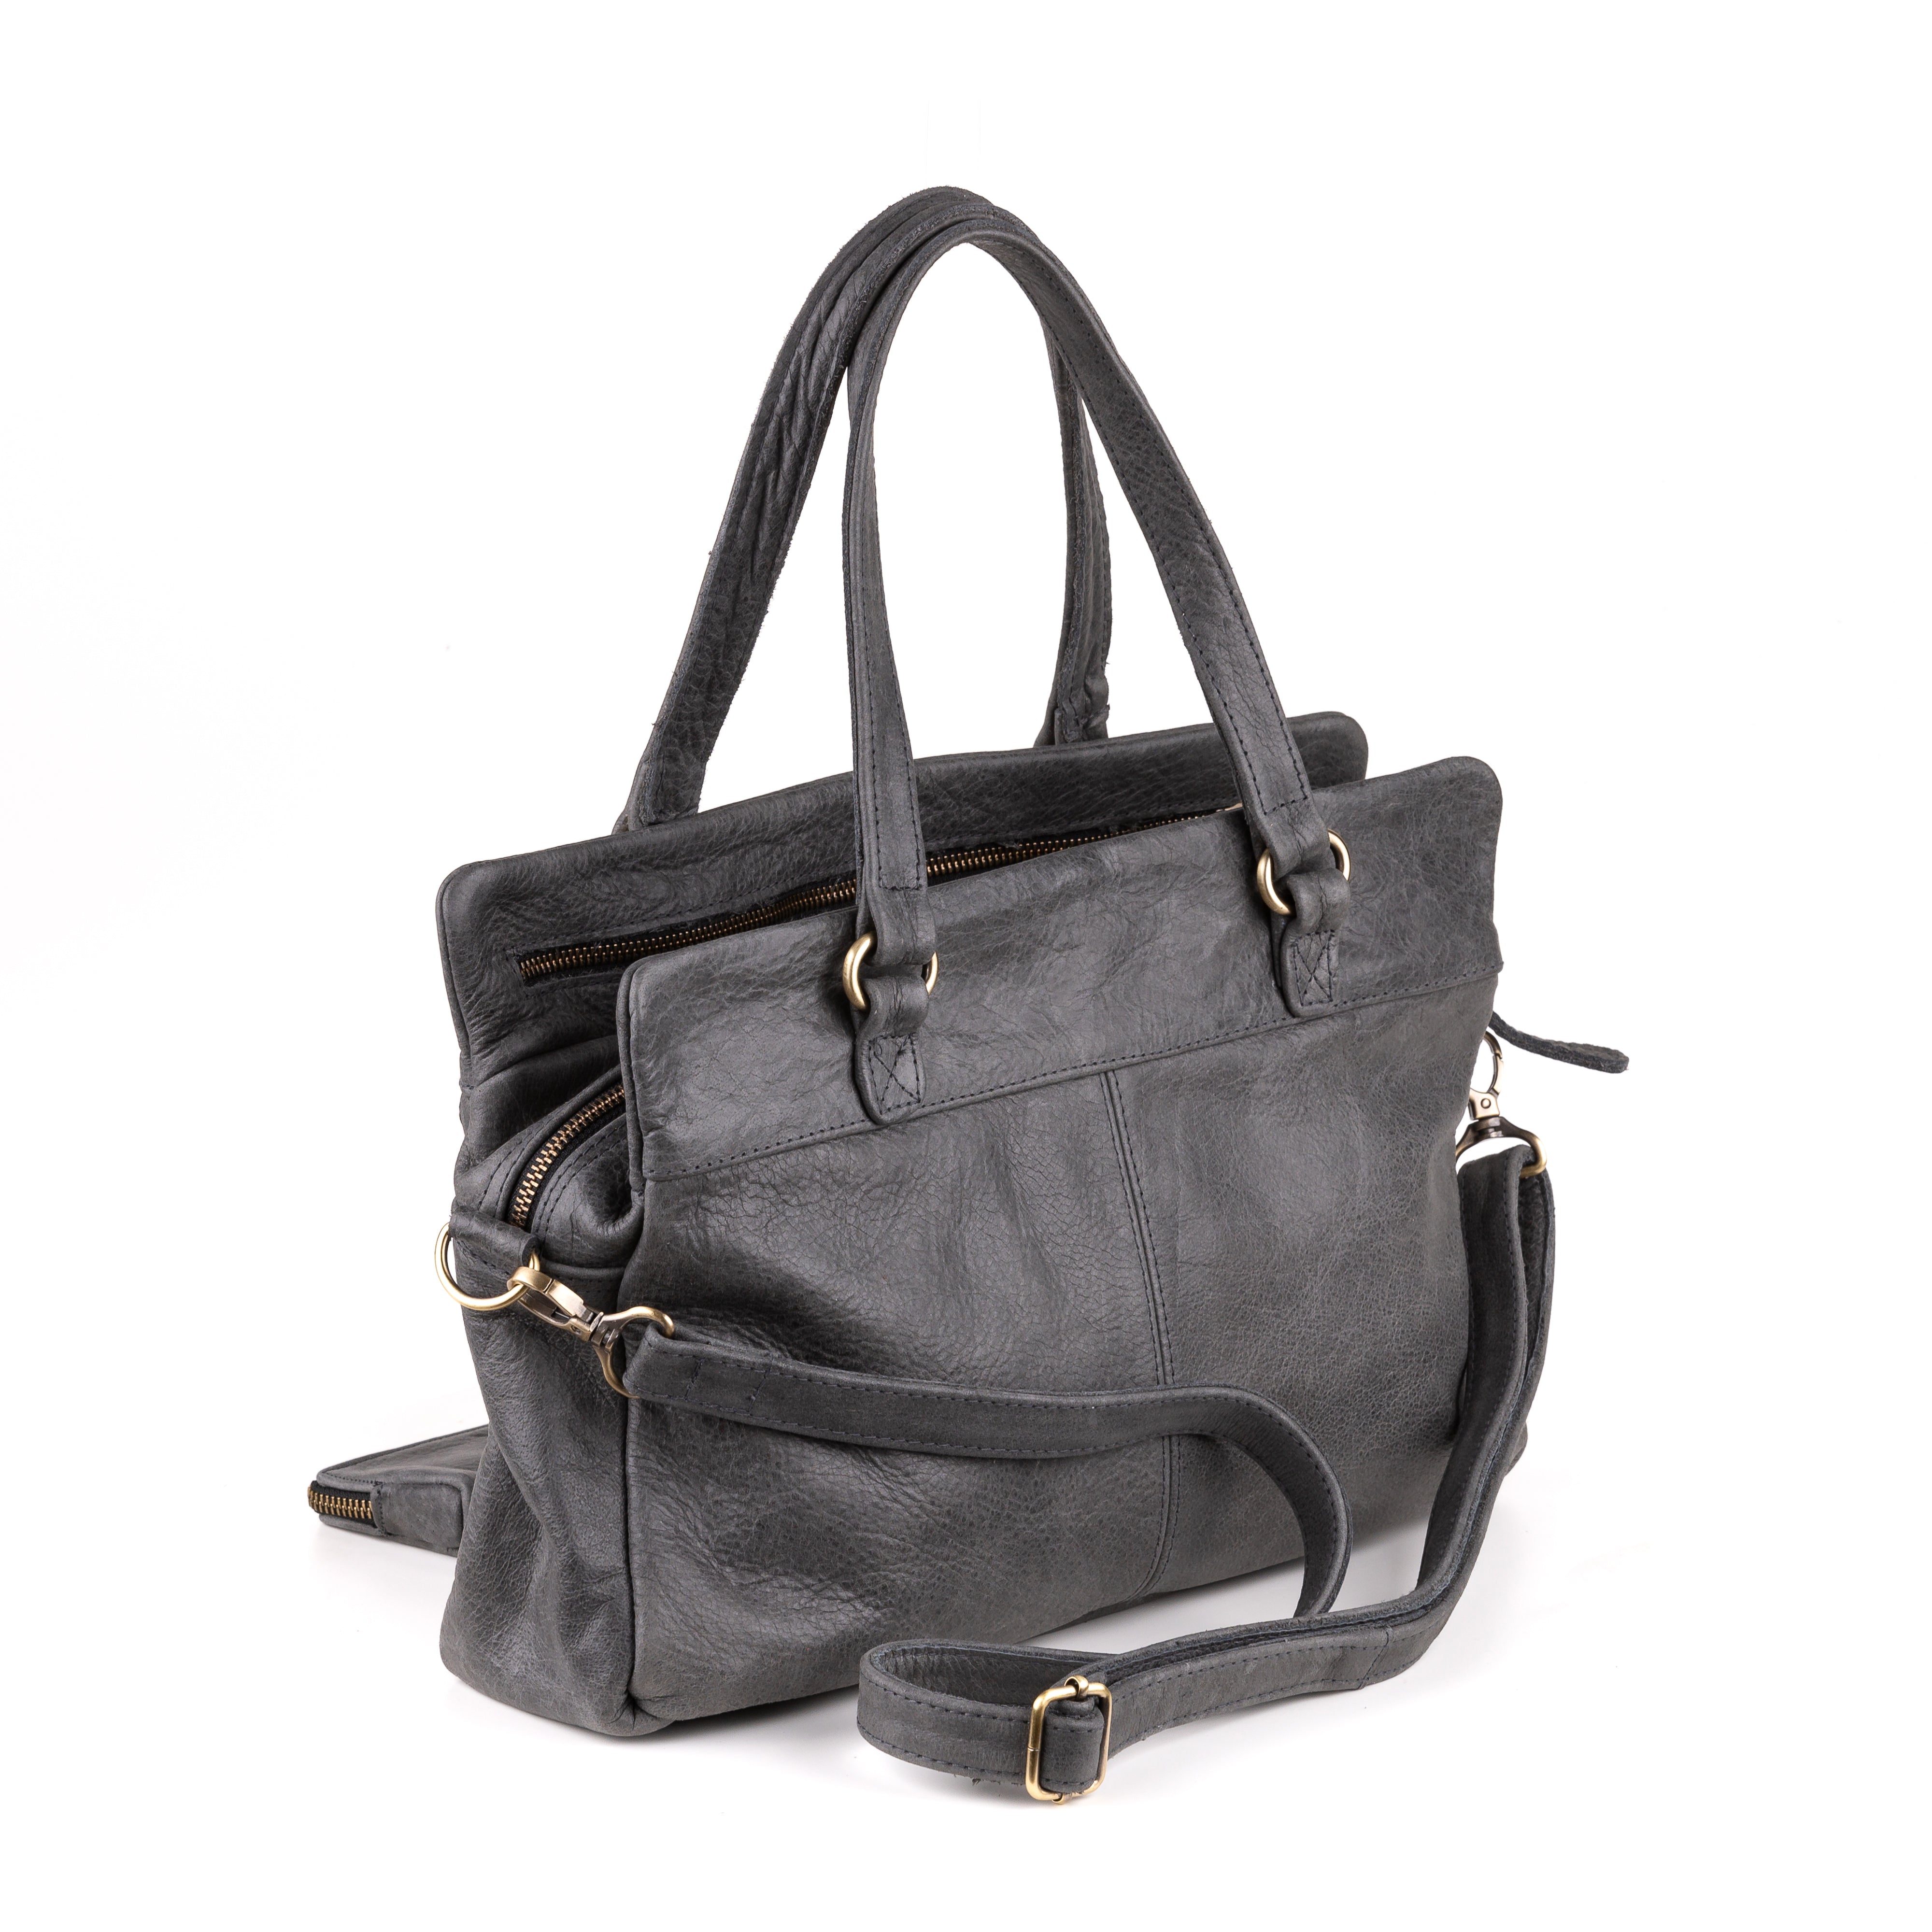 Arnhem Ladies Handbag Leather Anthracite - Vintage leather